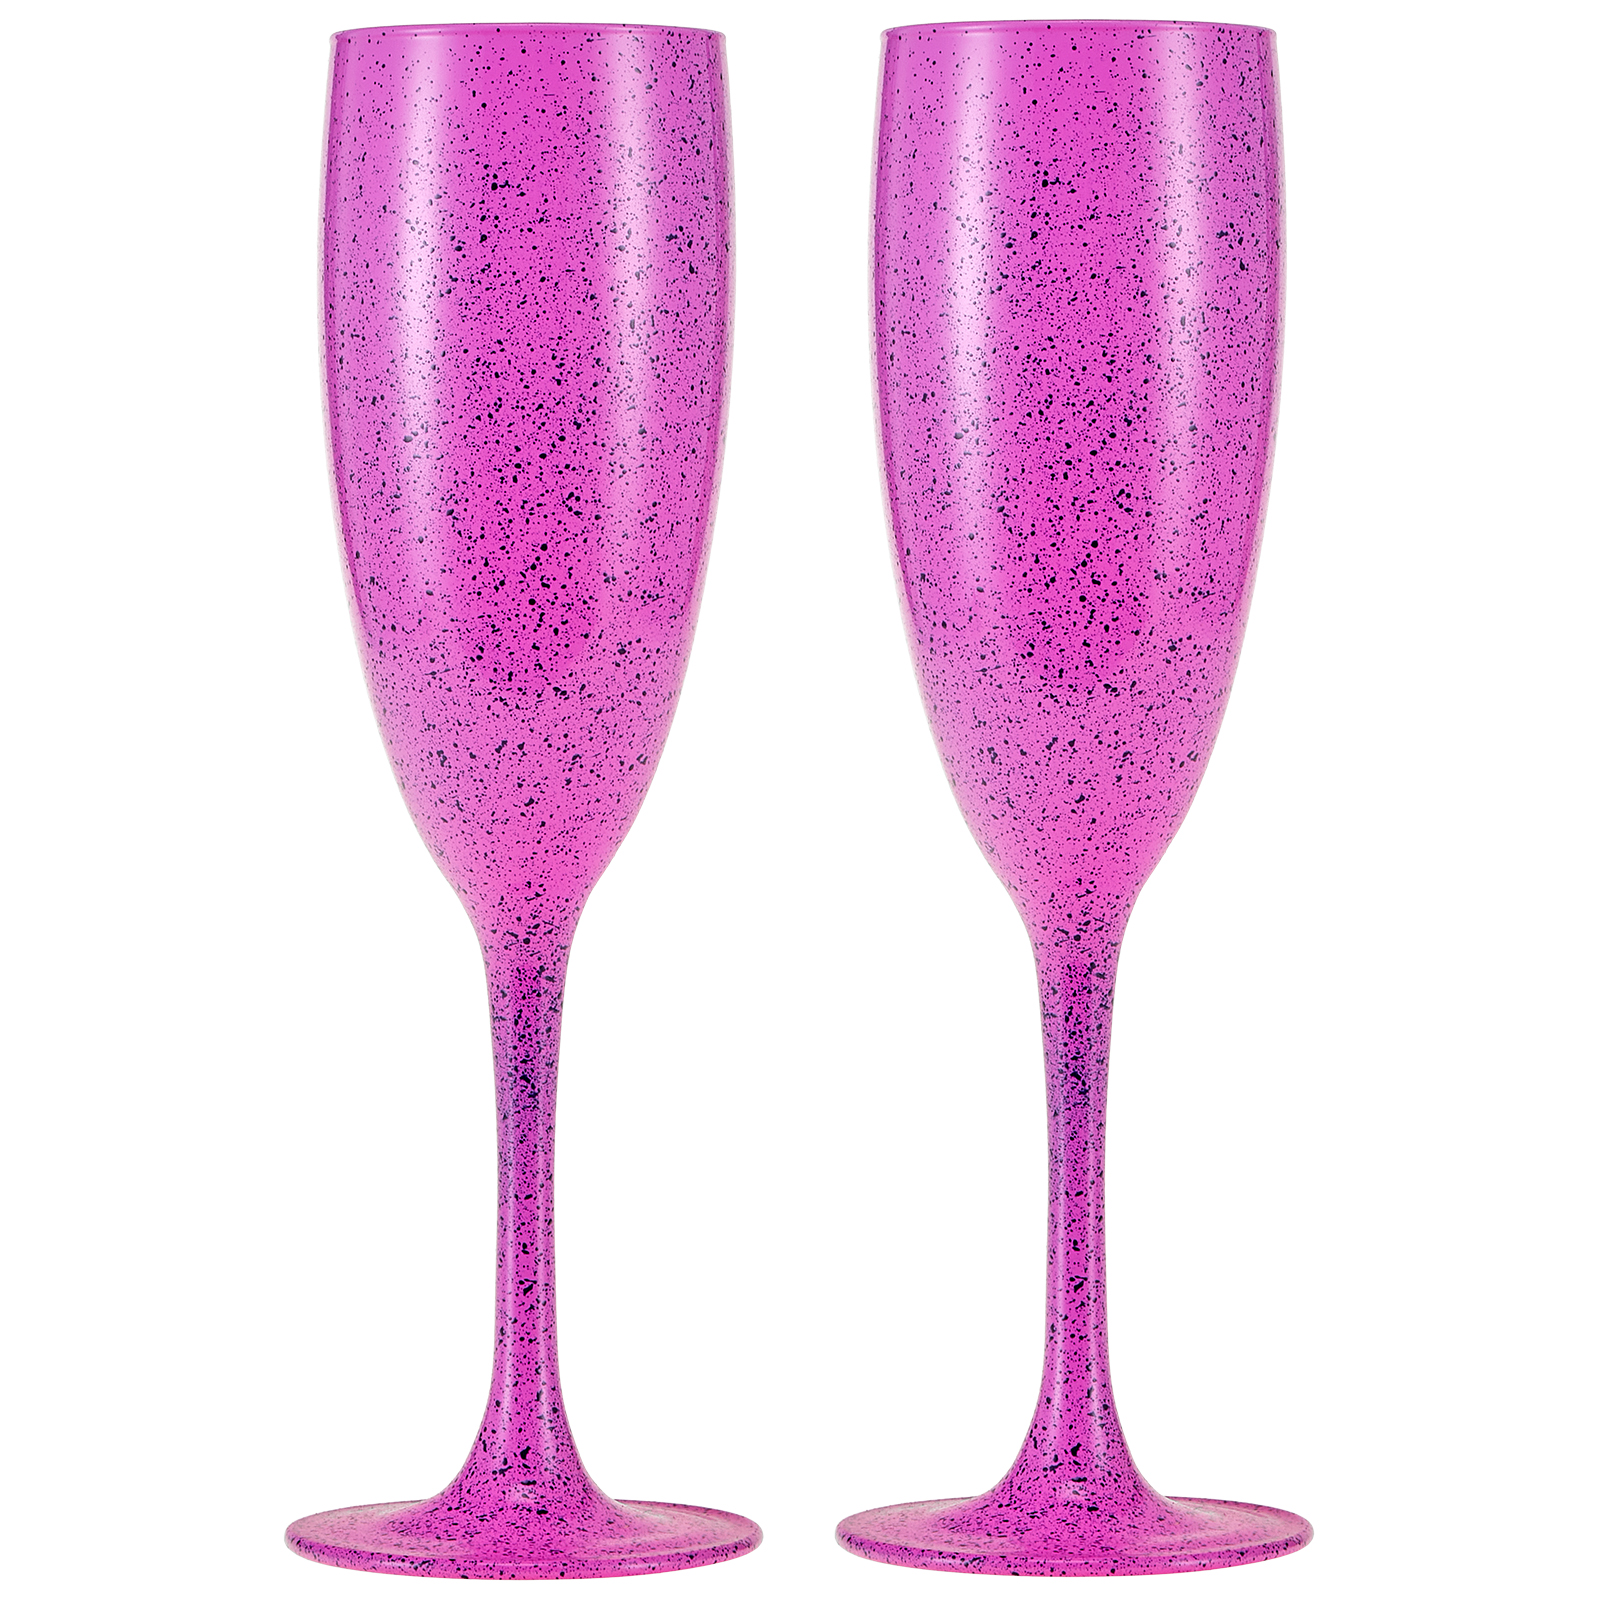 smart speaker умная колонка vk капсула мини с марусей 5вт с led часами розовый pink Набор бокалов для шампанского Royal Garden Pink&Turquoise 2 шт 170 мл розовый/бирюзовый